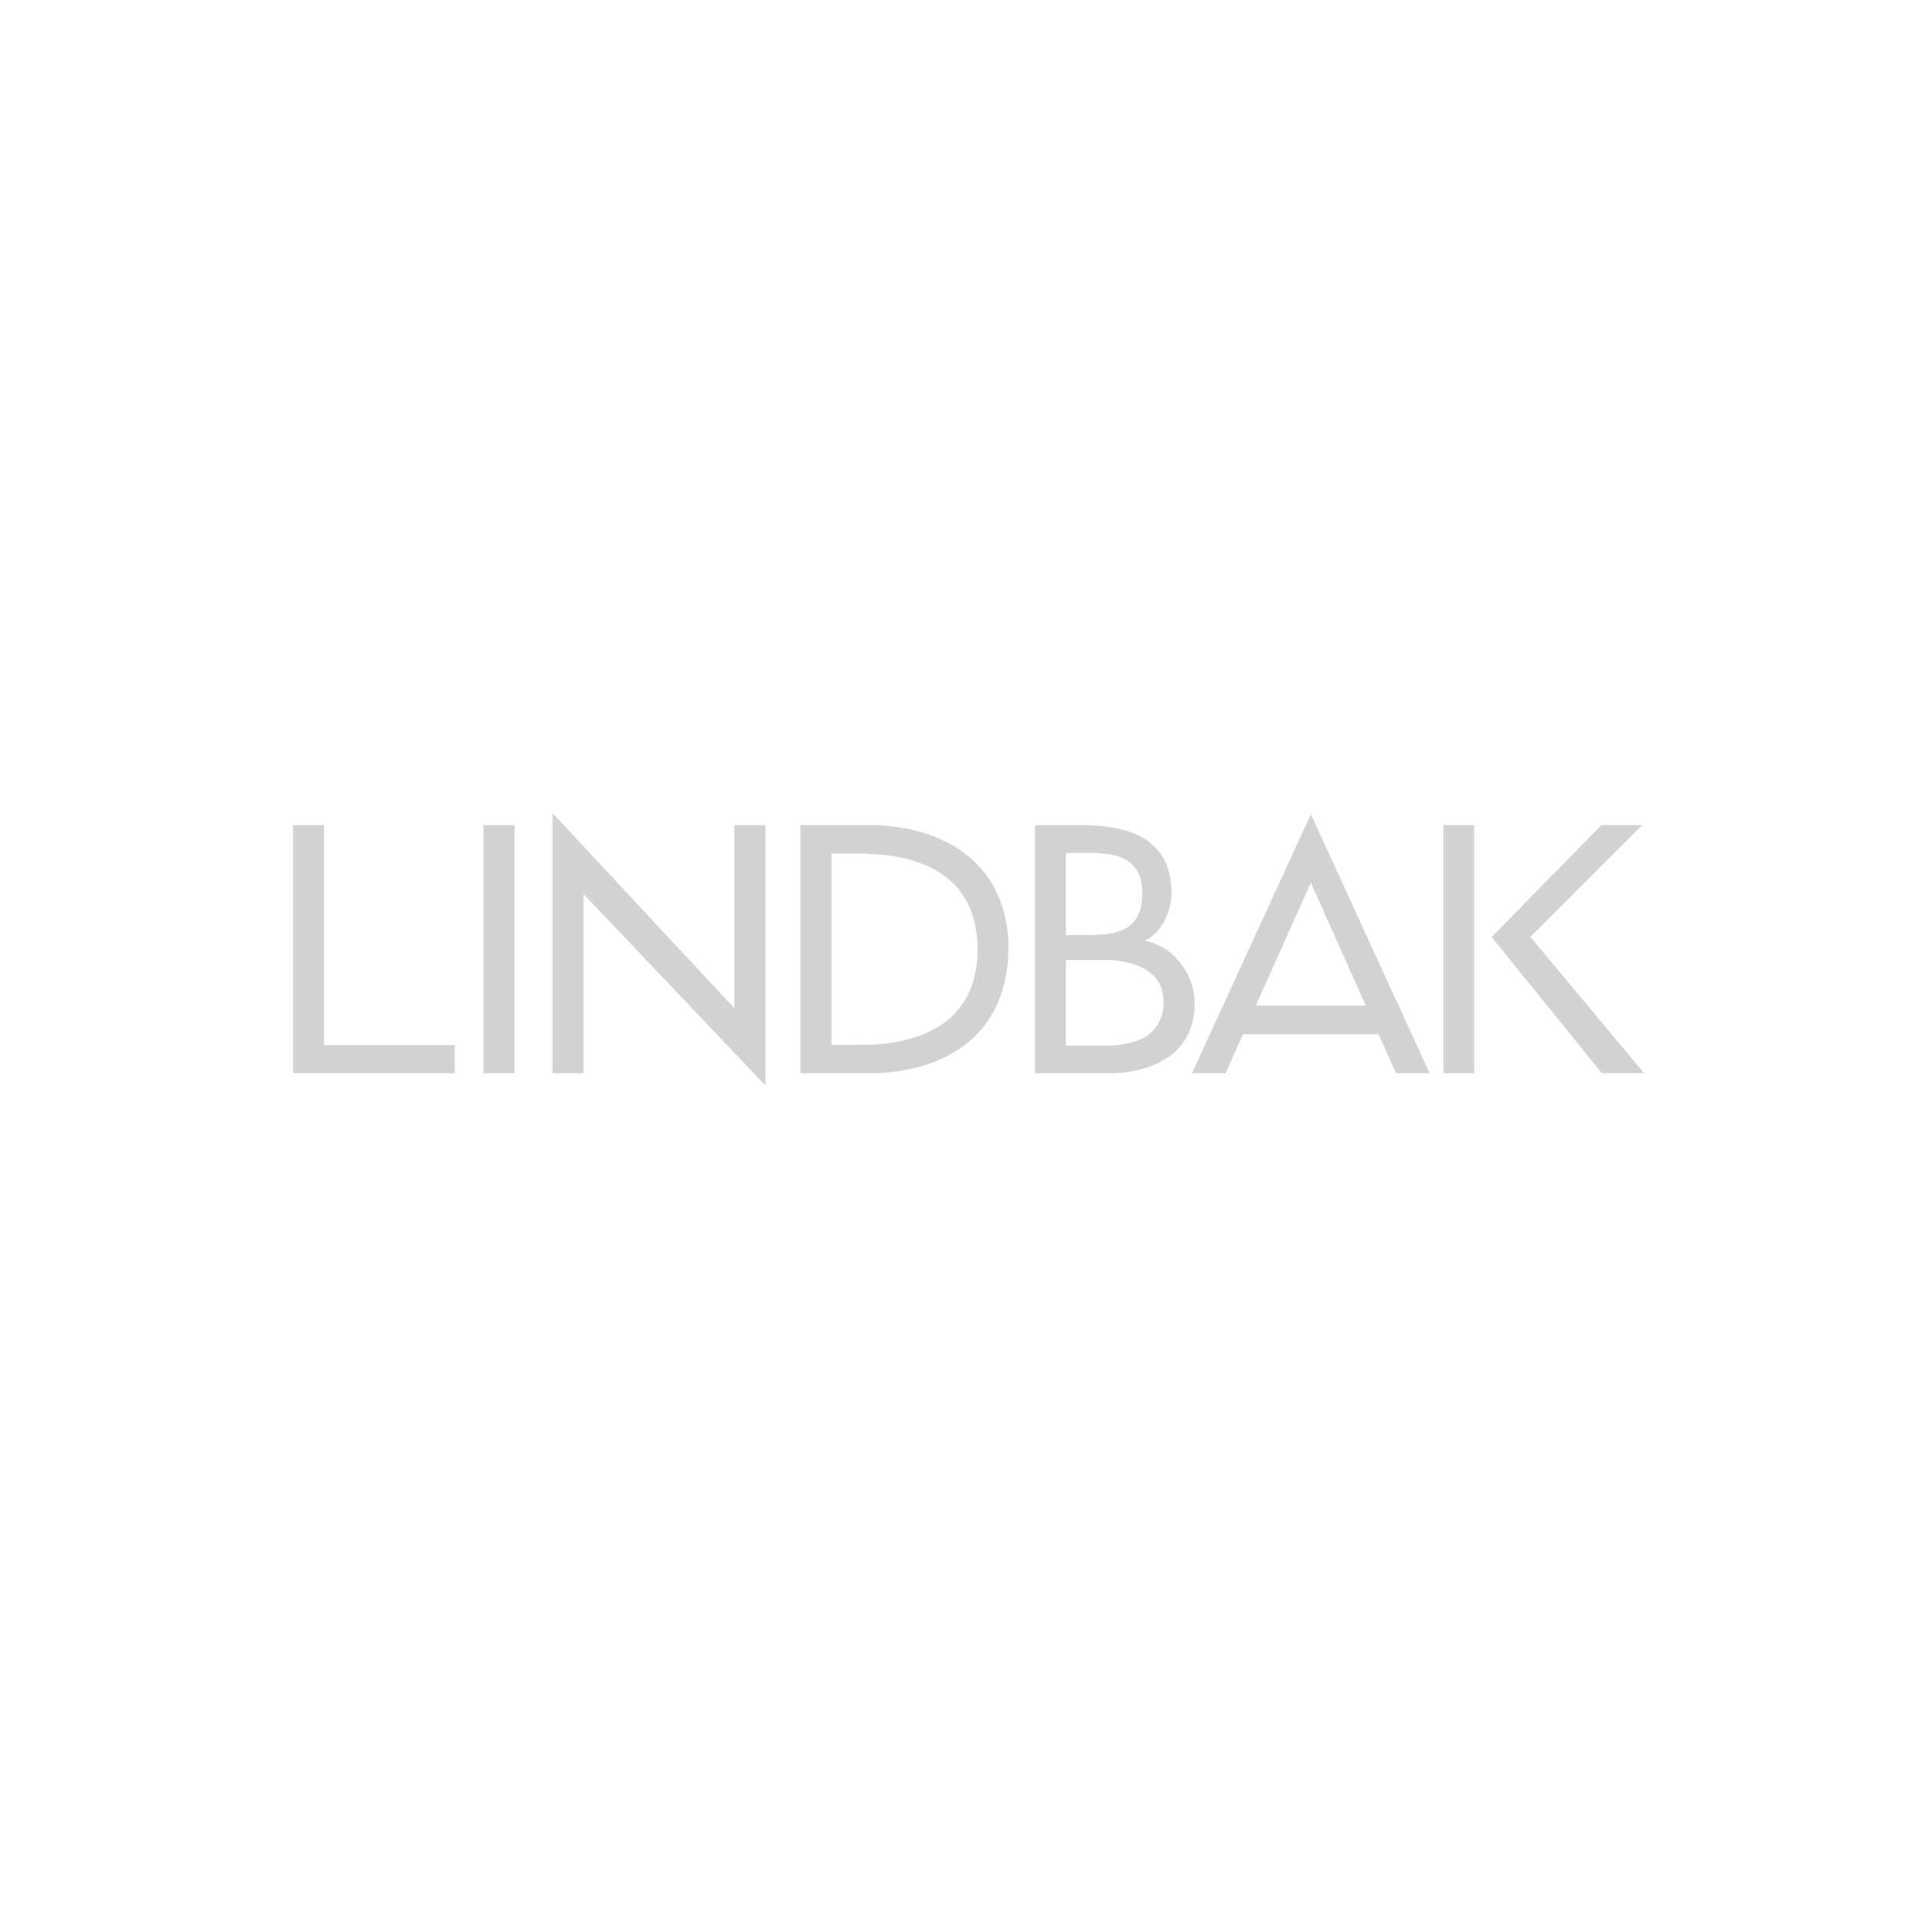 Lindbak-01.png